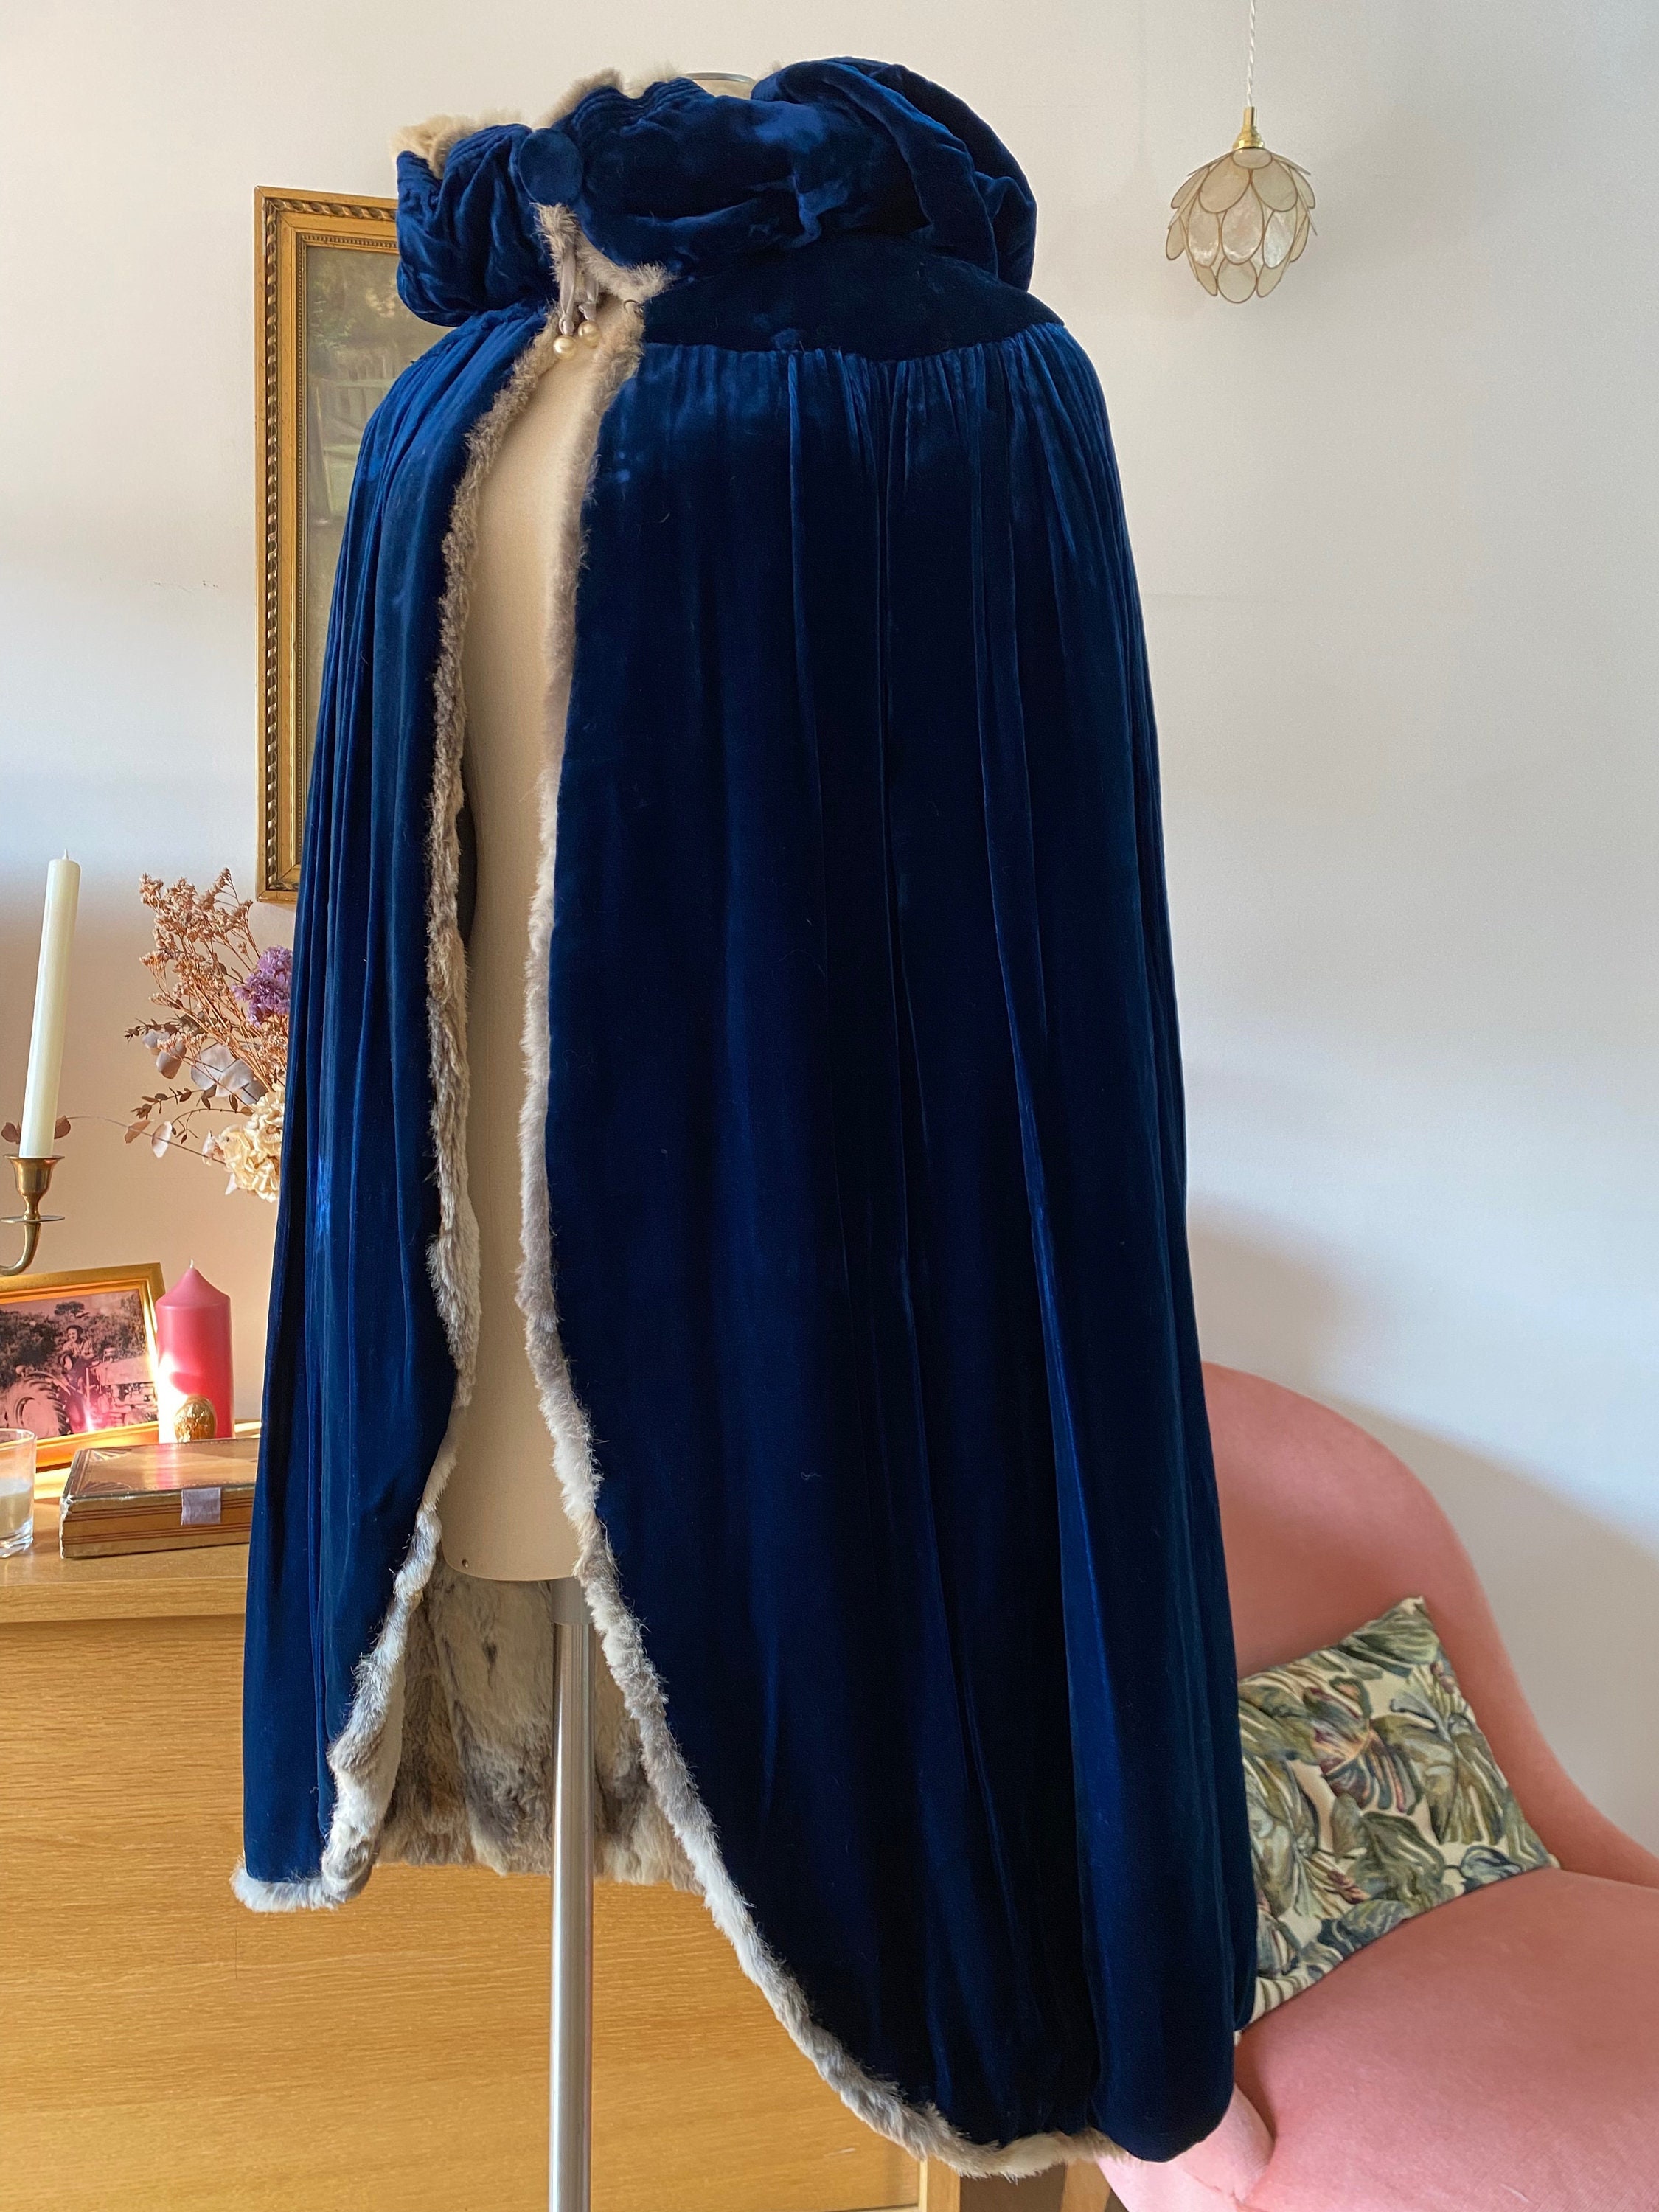 Vintage 1980s Louis Feraud Female Mink Coat Size M L - Ruby Lane